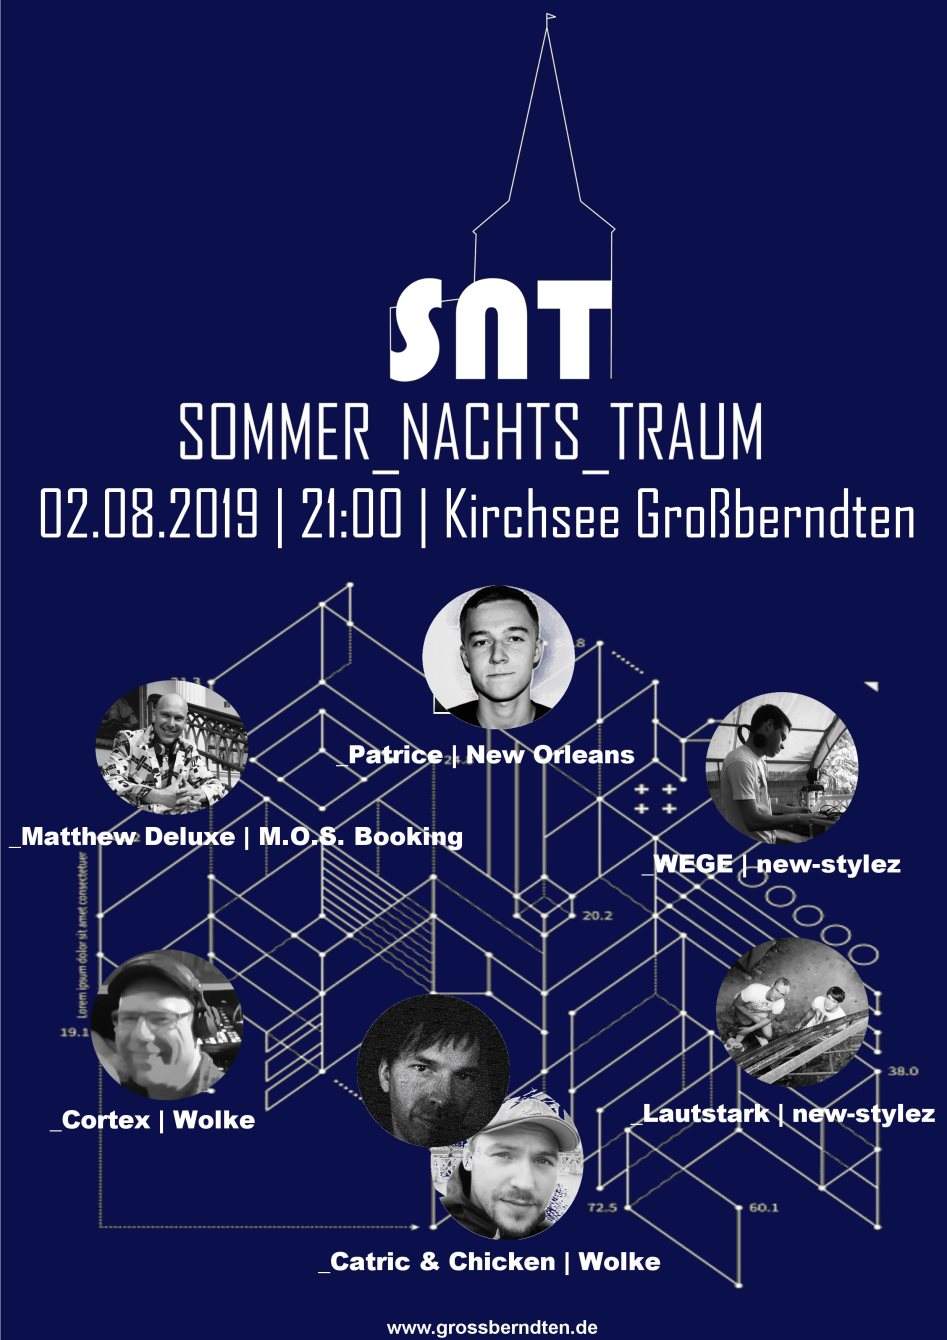 Sommer_nachts_traum 2019 - フライヤー表